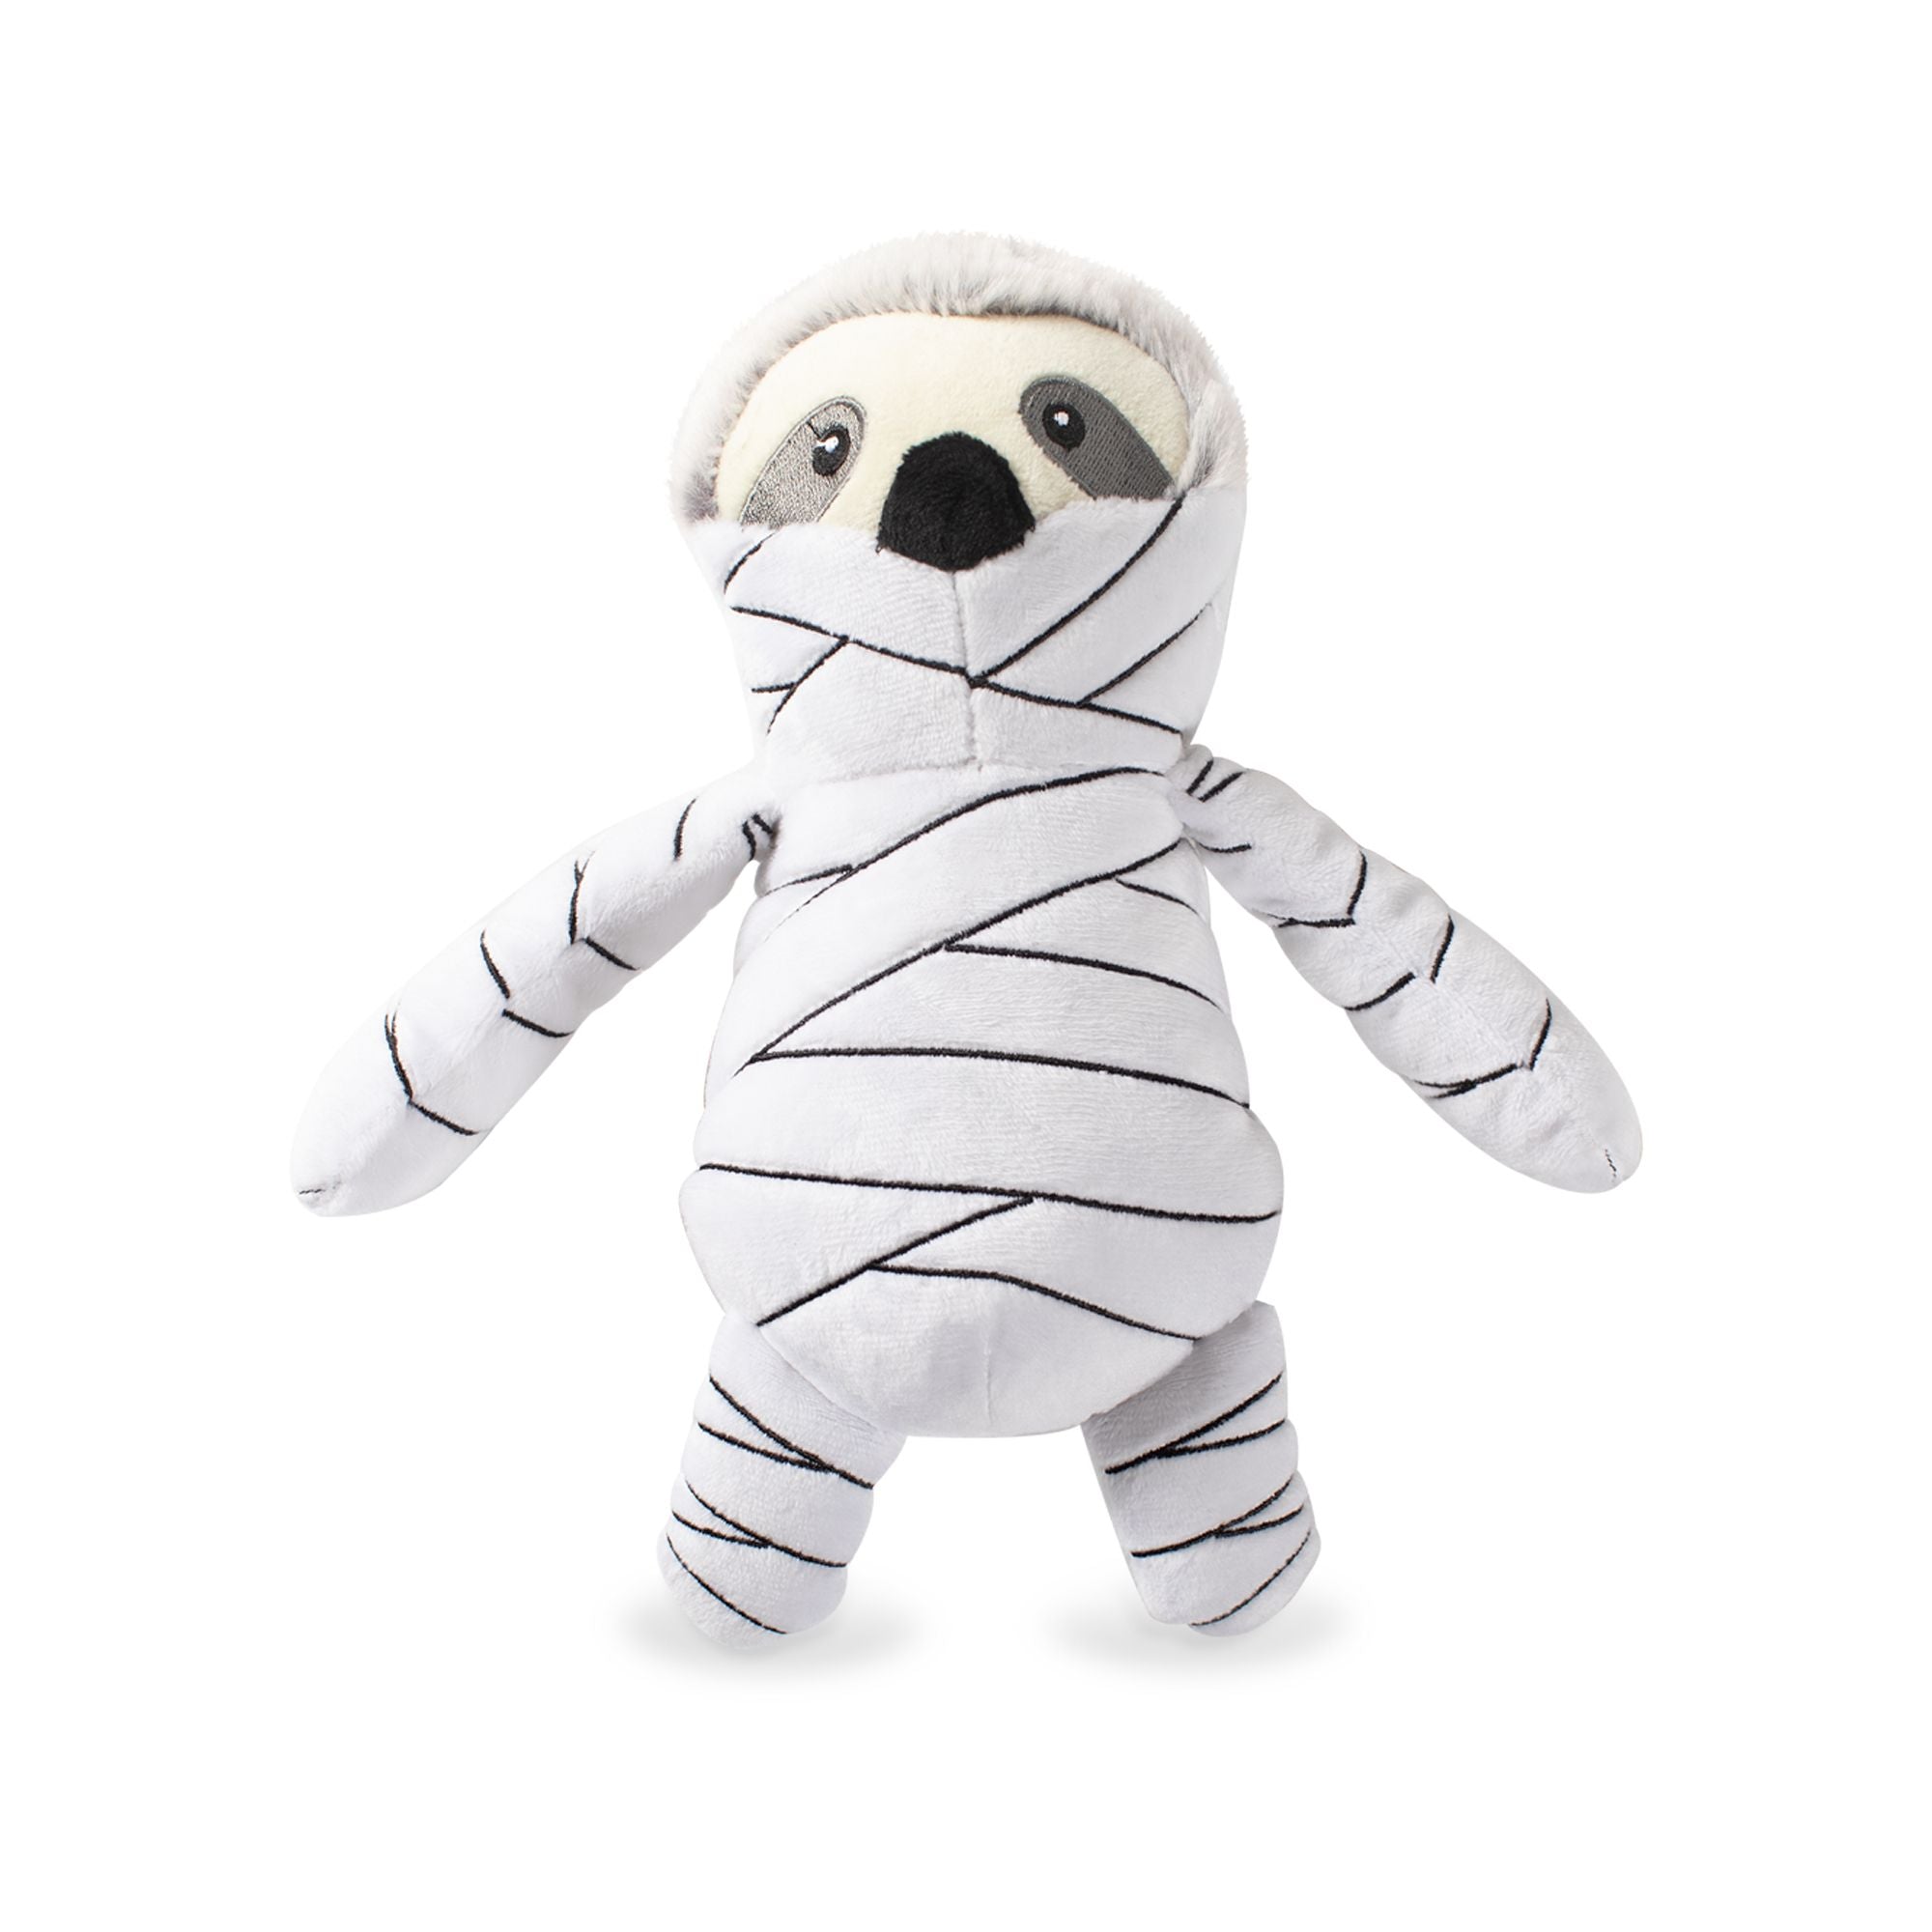 Fringe Studio Dog Squeaker Toy - Slumber the Mummy Sloth